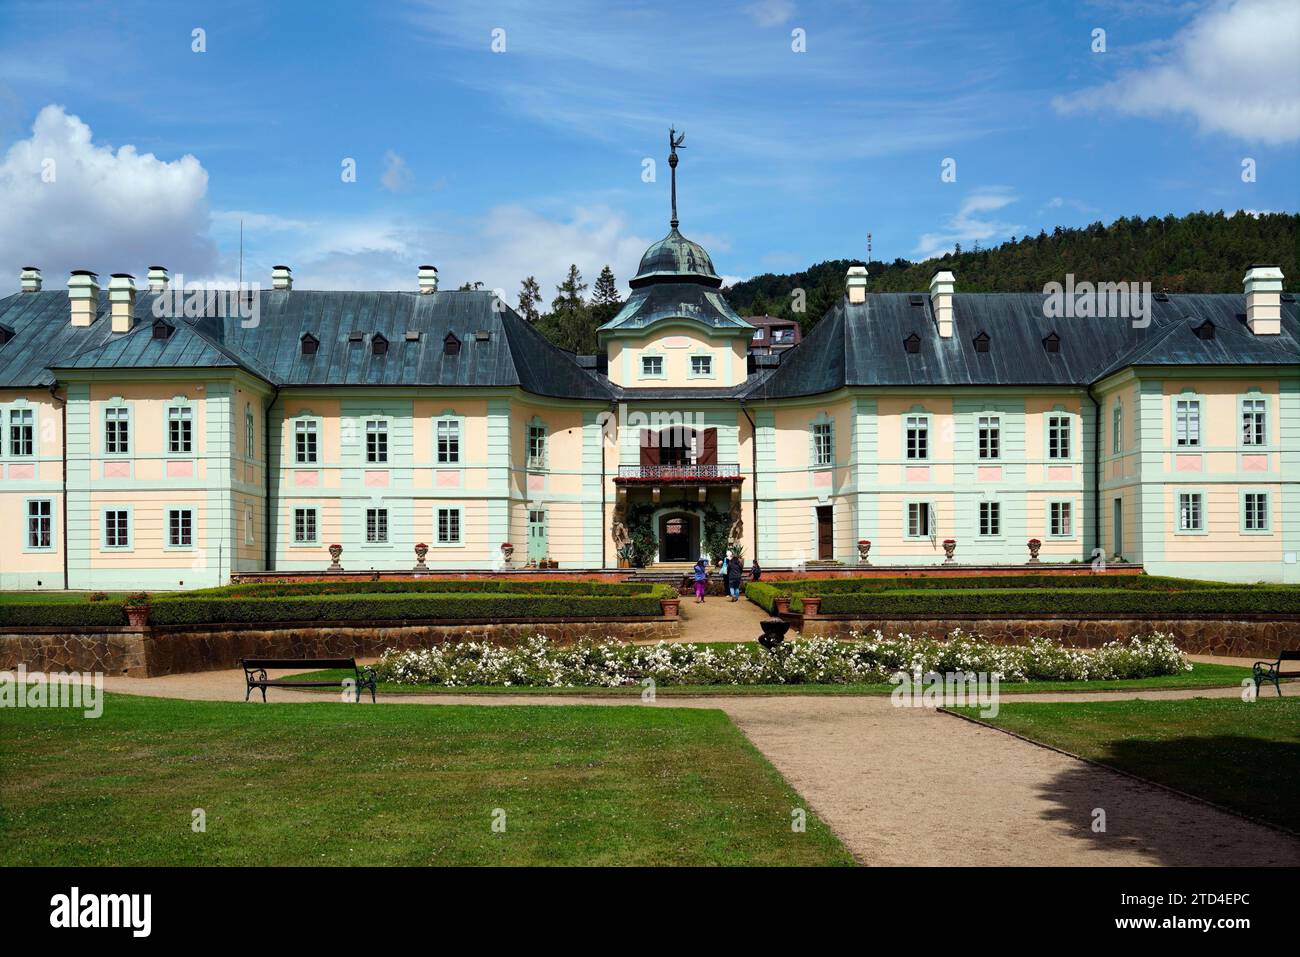 Château, Manetin, Manetin, région de Pilsen, République tchèque, Manetin, Manetin, Bohême occidentale, République tchèque Banque D'Images